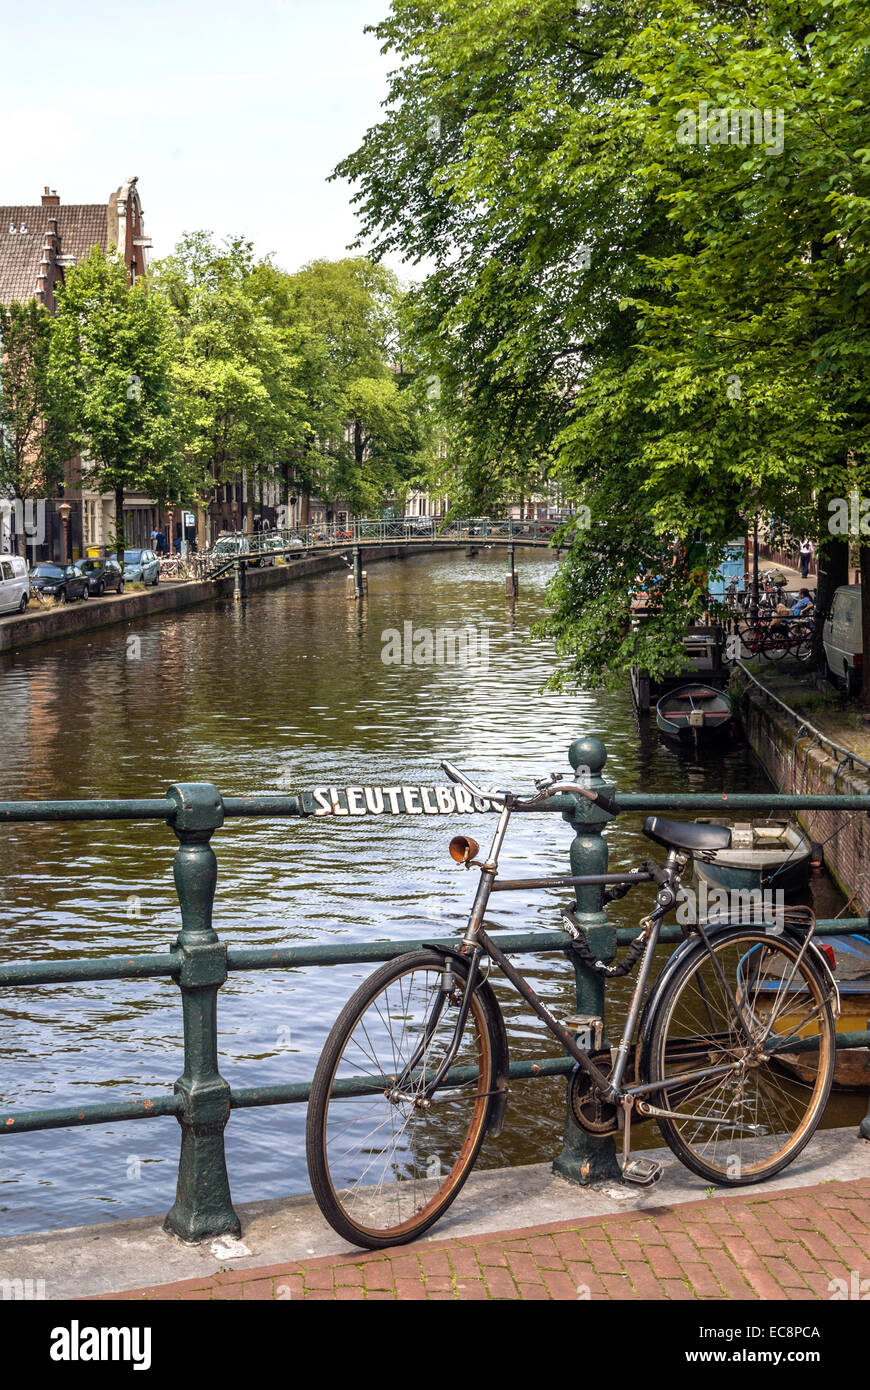 Seul vieux vélo garé sur un pont de la ville d'Amsterdam, Pays-Bas. Banque D'Images